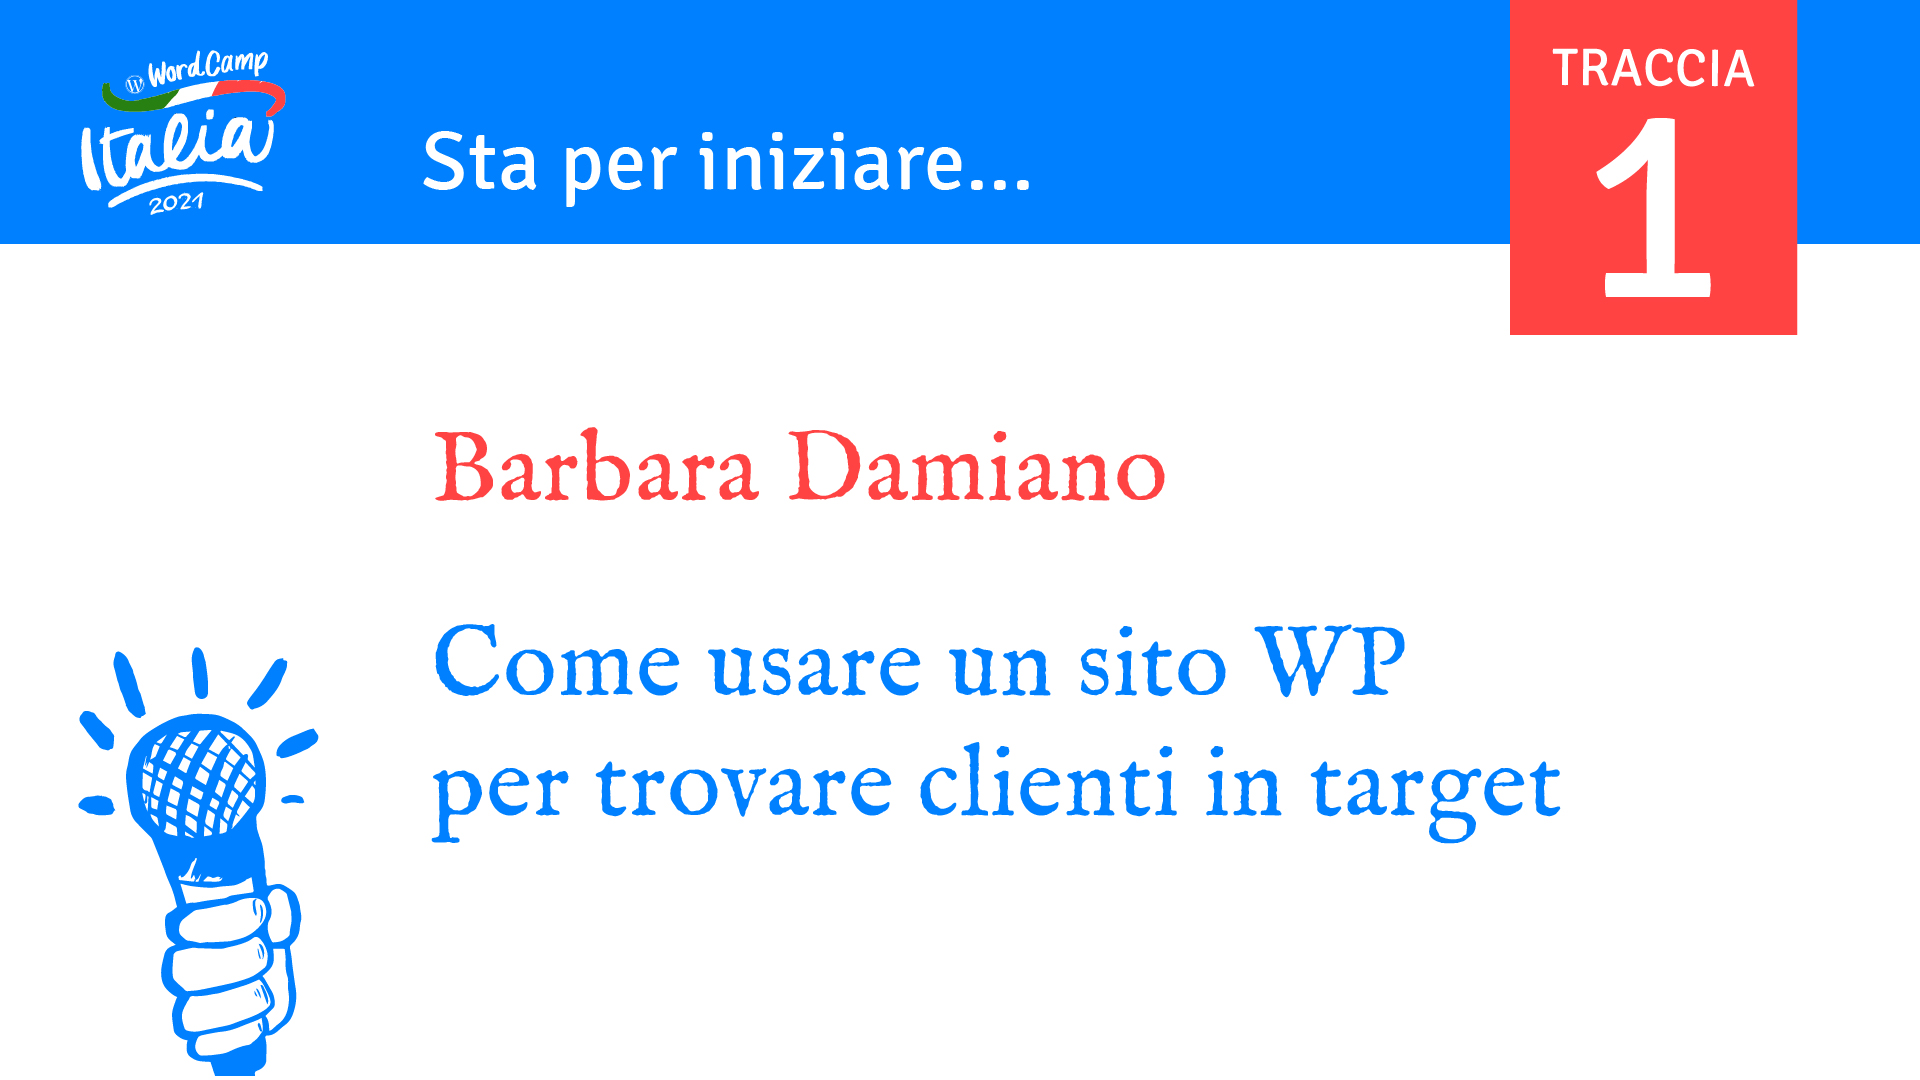 Barbara Damiano: Come usare un sito WordPress per trovare clienti in target